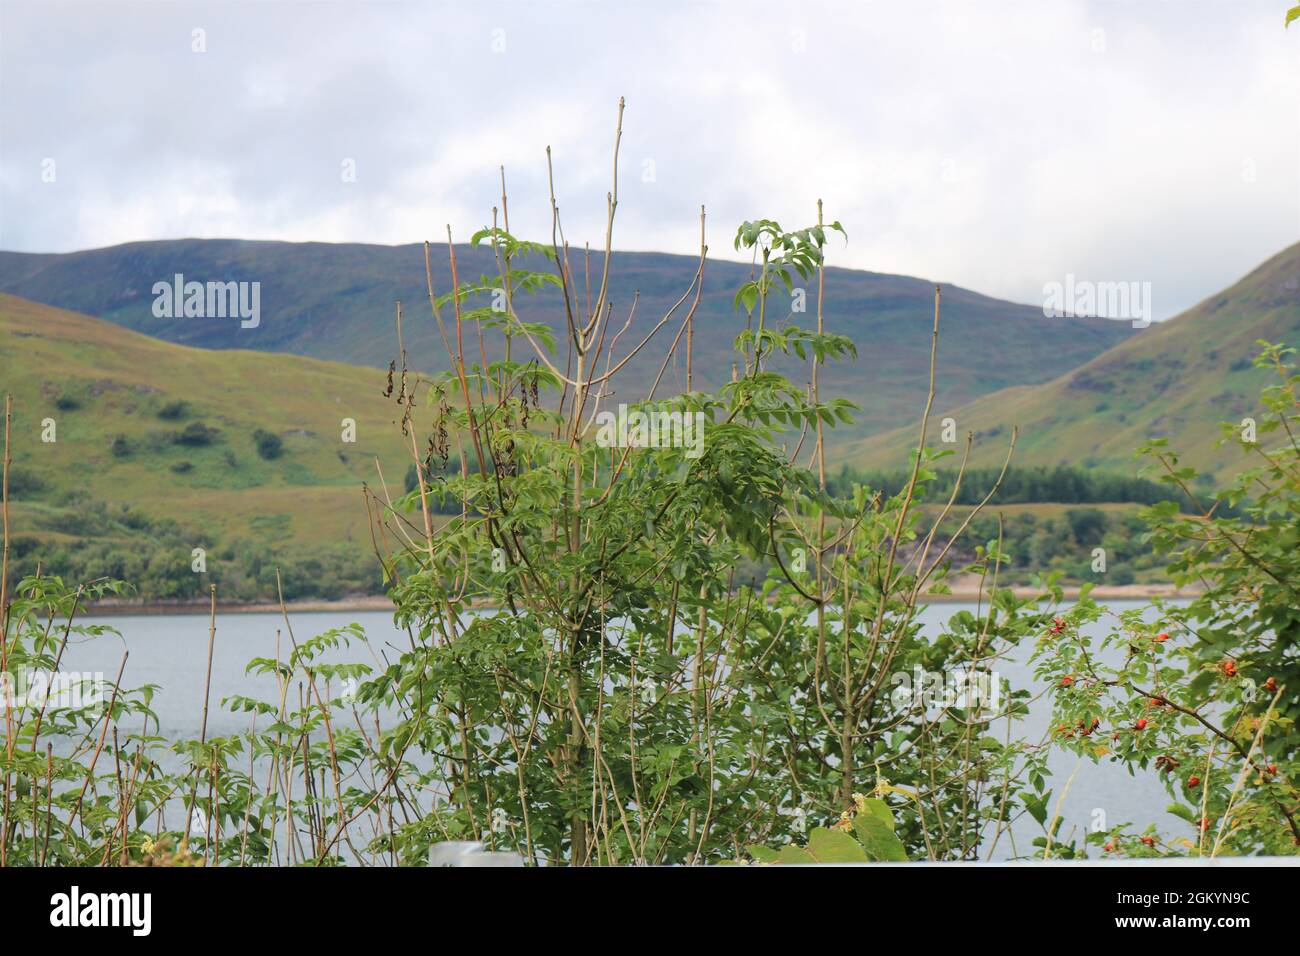 Loch Linnhe, See loch an der Westküste Schottlands. Stockfoto